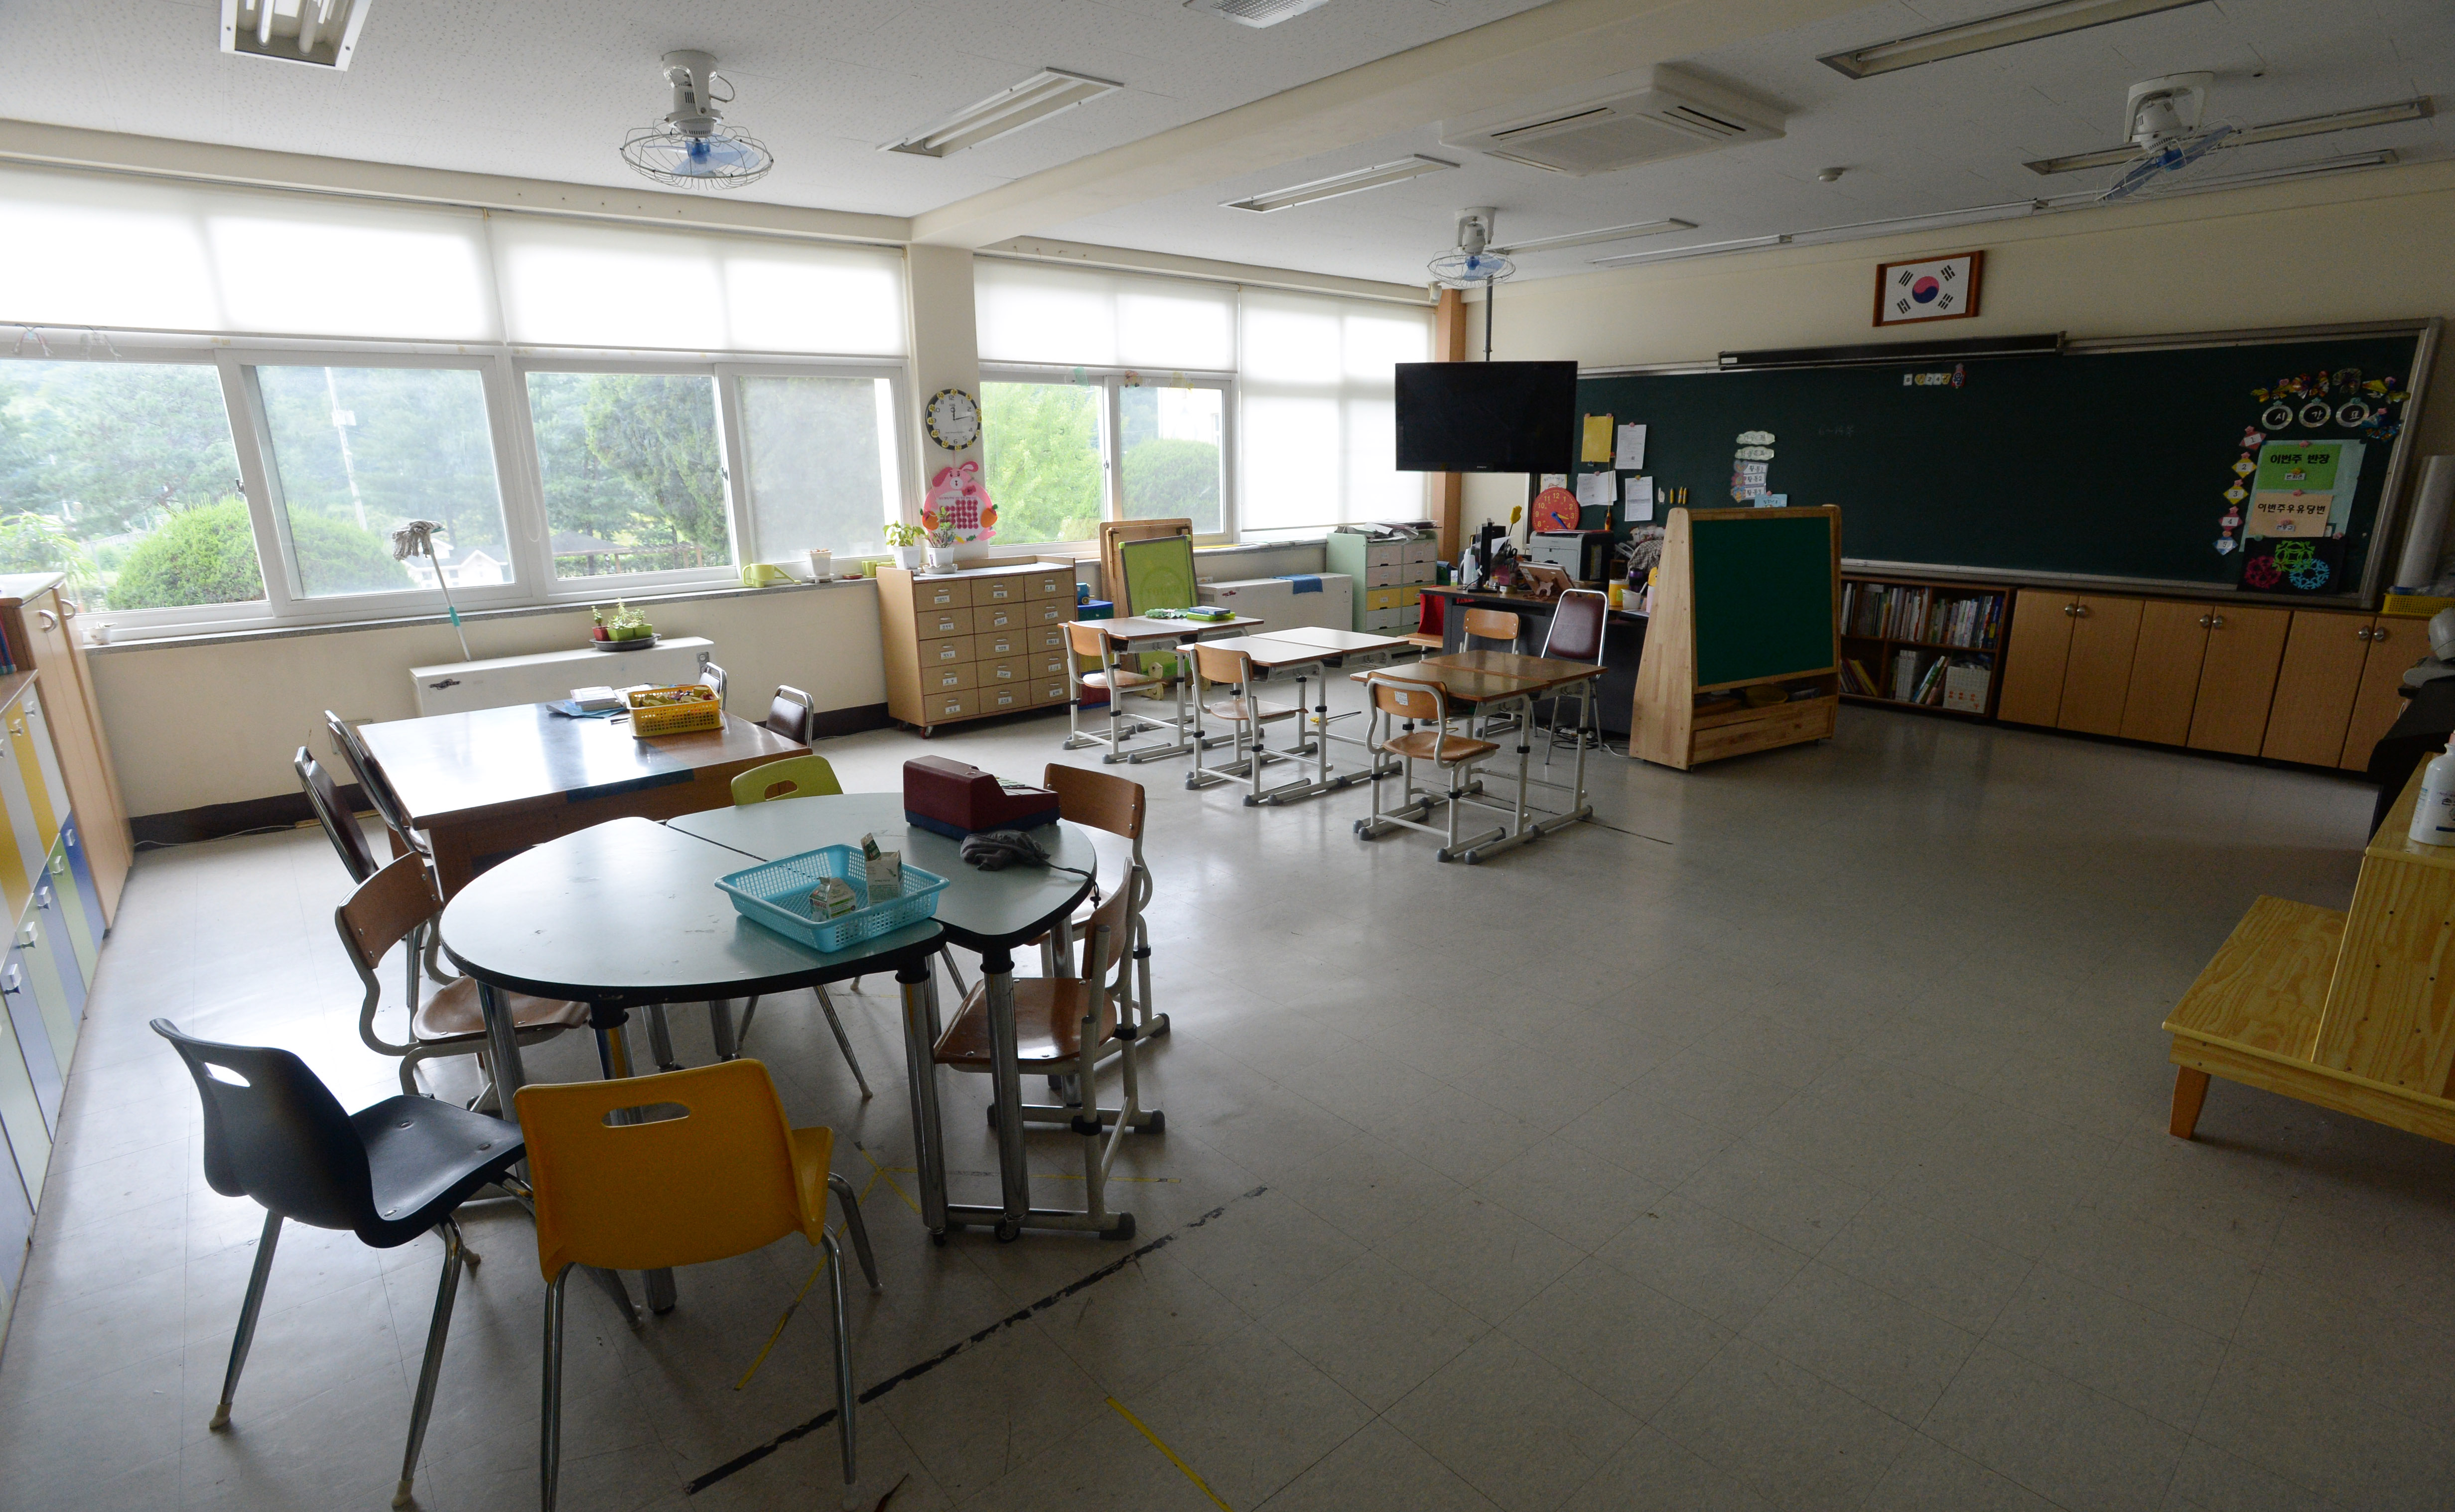 한 초등학교 교실 안 풍경. 서울신문 DB ※사건과 관련 없는 사진입니다